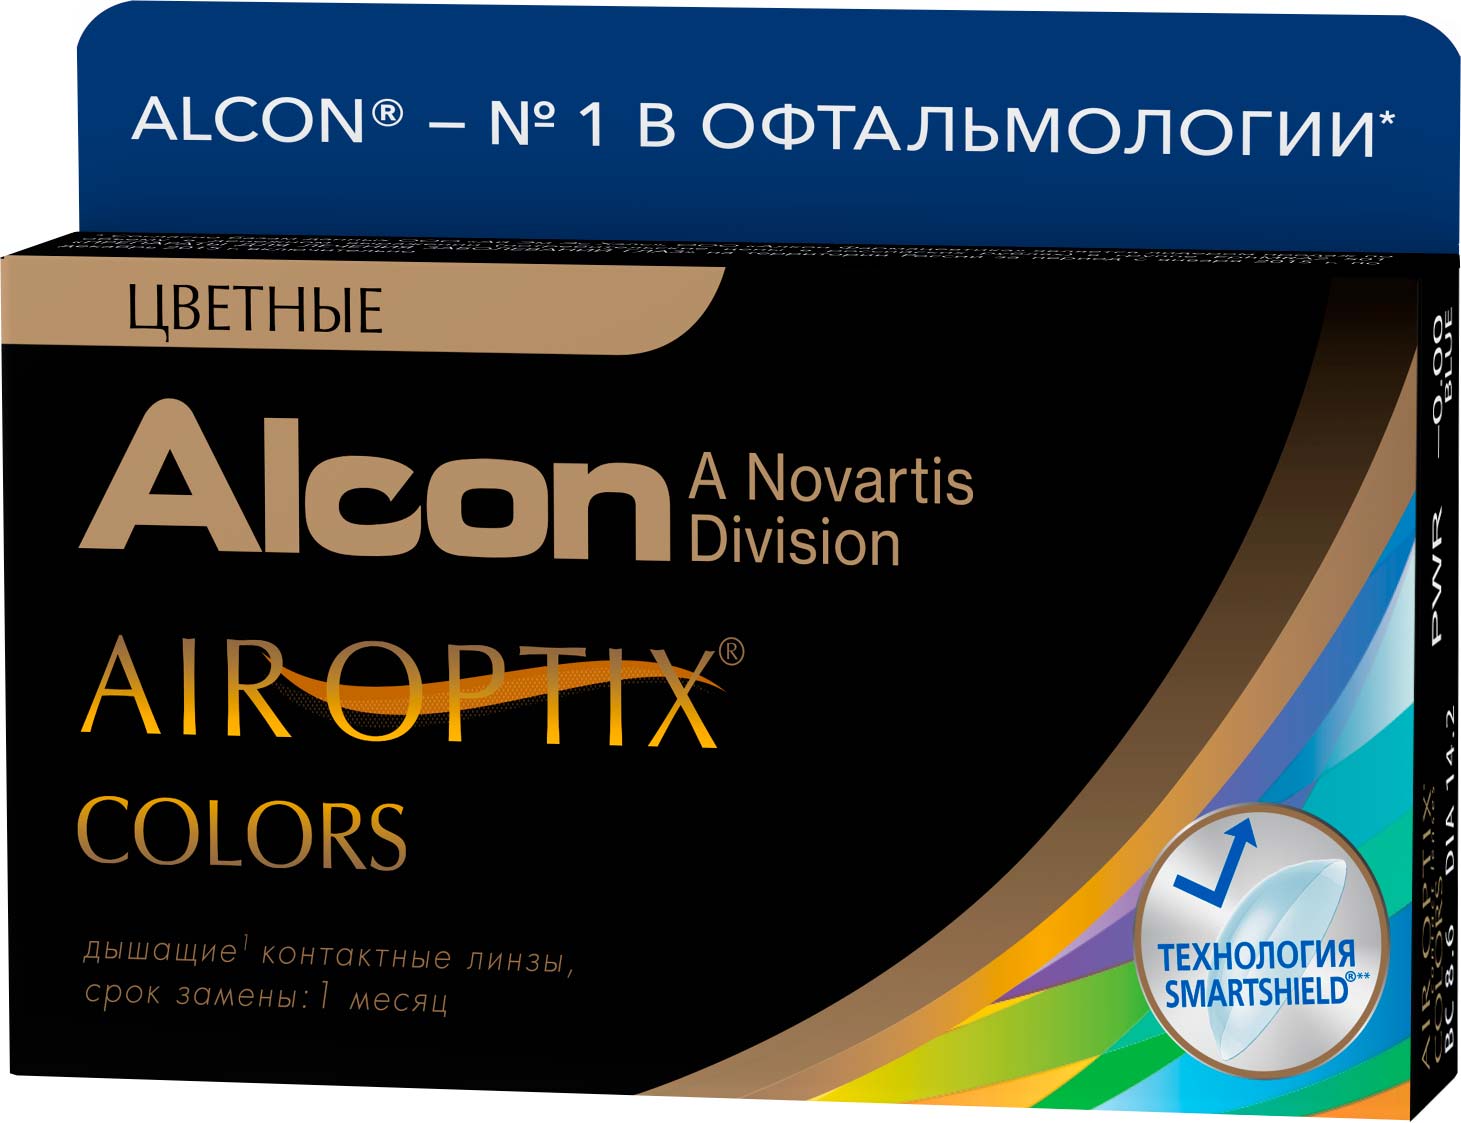 Alcon. Air Optix (Alcon) Colors (2 линзы). Контактные линзы Air Optix (Alcon) Colors. Цветные линзы Alcon Air Optix. Цветные контактные линзы Alcon Air Optix Colors.